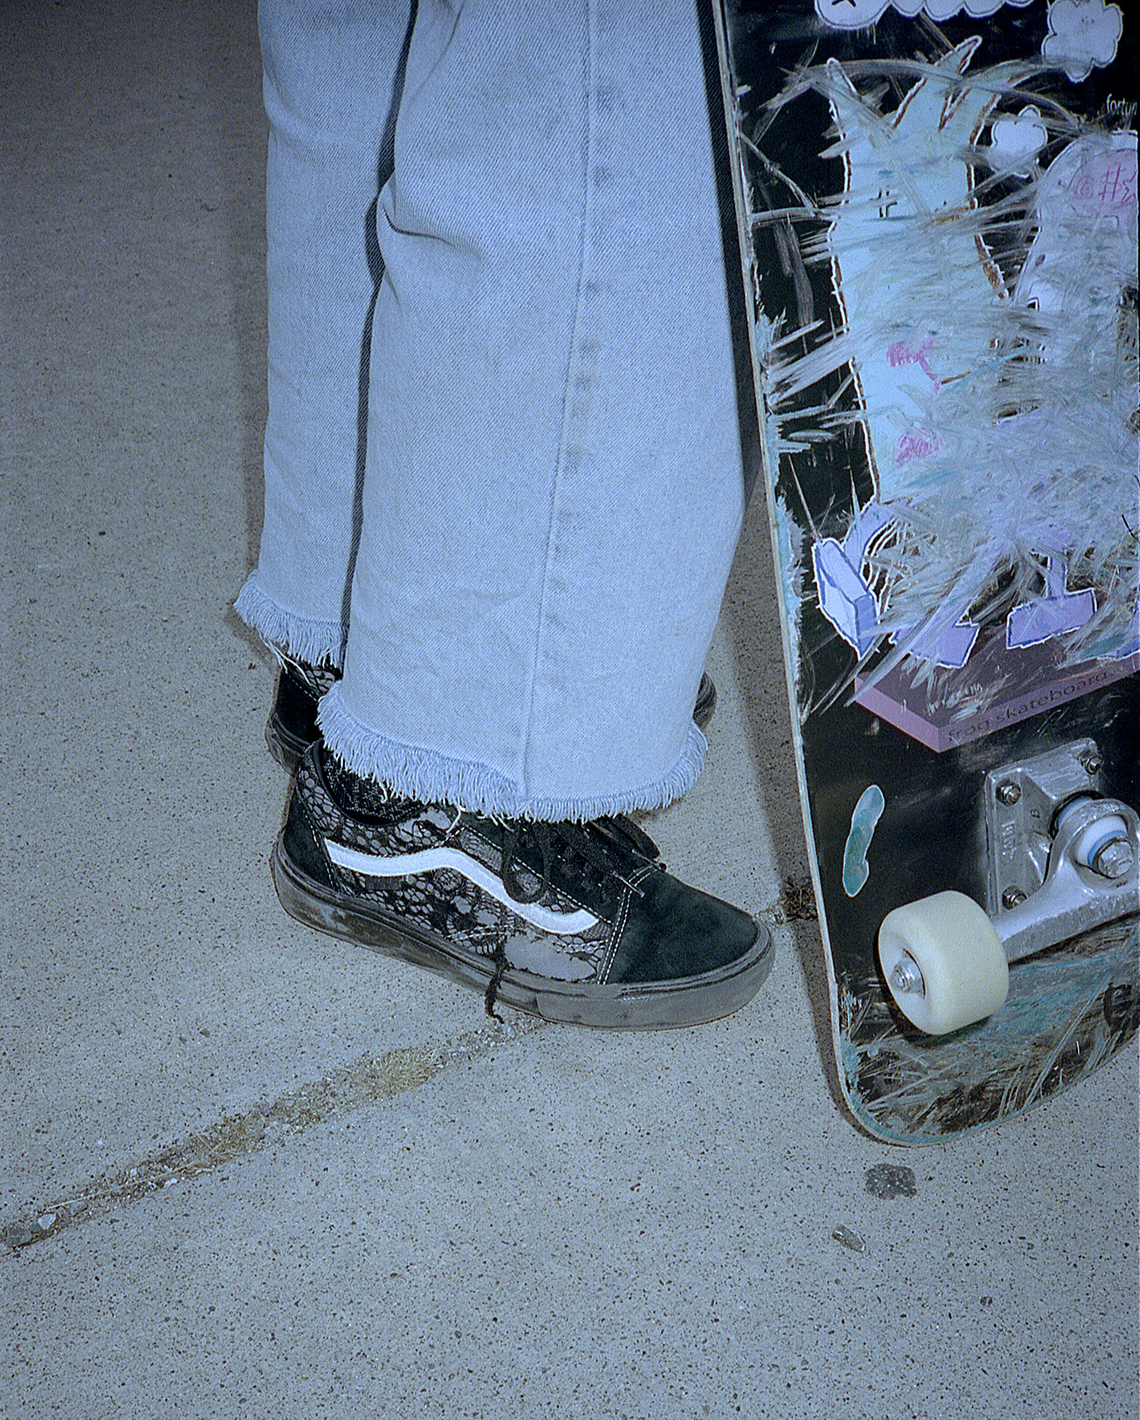 Premier Skate rug vans Old Skool Grosso Mid Release Date 17